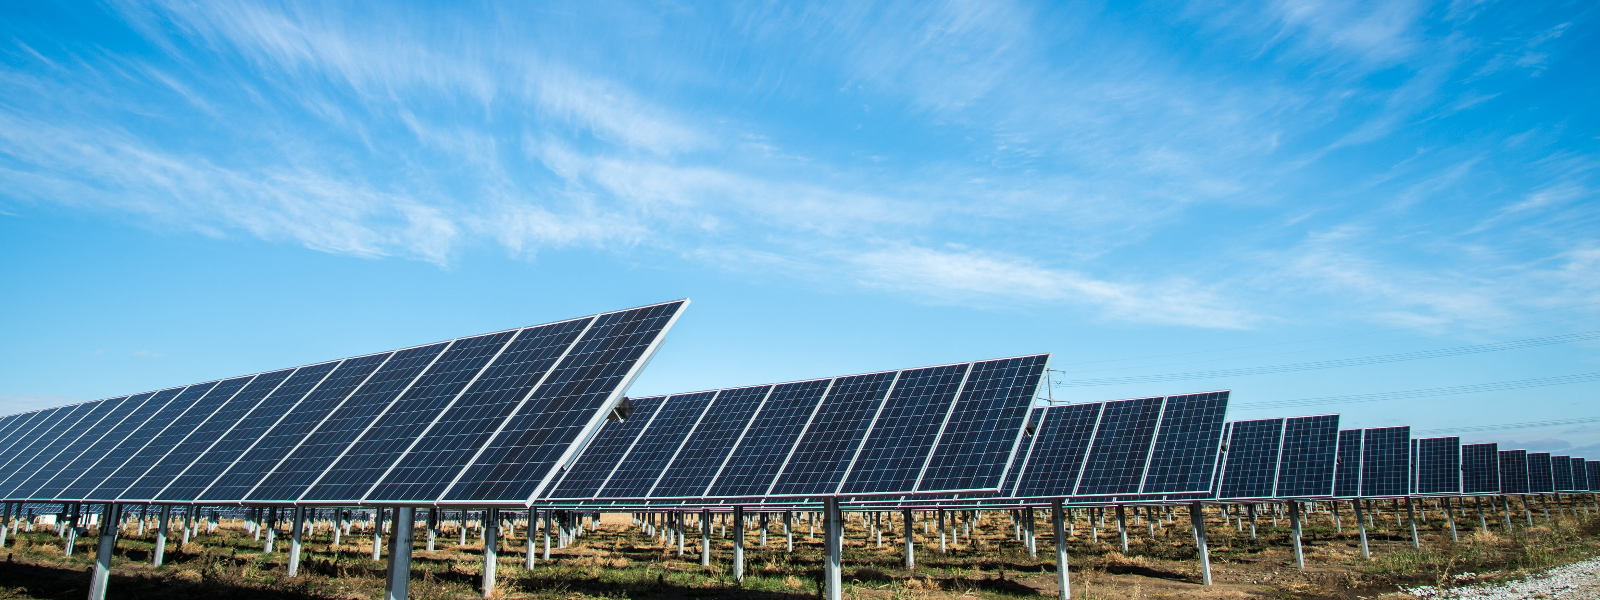 EESTI PÄIKESEVÄGI OÜ - Oleme pühendunud taastuvenergia lahendustele, kuid peamiselt päikesepaneelide paigaldamisele. ...